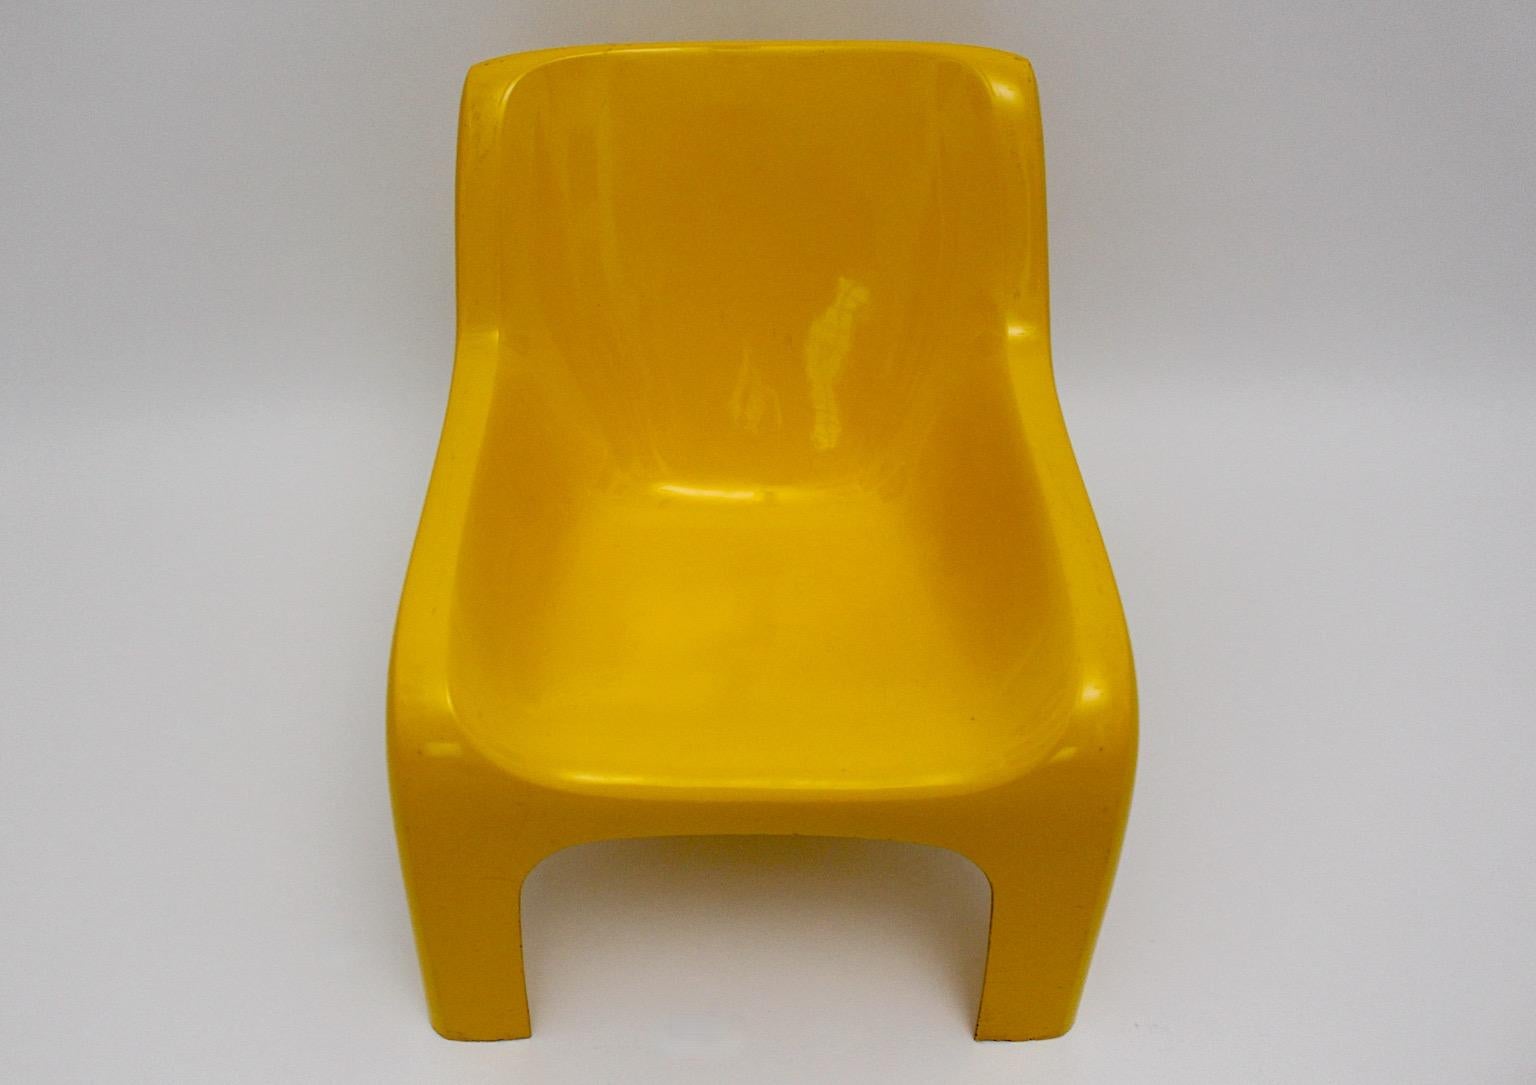 Chaise longue vintage de l'âge de l'espace modèle Anatomia en plastique de couleur jaune par Ahti Kotikoski 1968s pour Asko Finlande.
Une superbe chaise longue en plastique de couleur jaune soleil par Ahti Kotikoski pour Asko 1968, Finlande.
Famed a